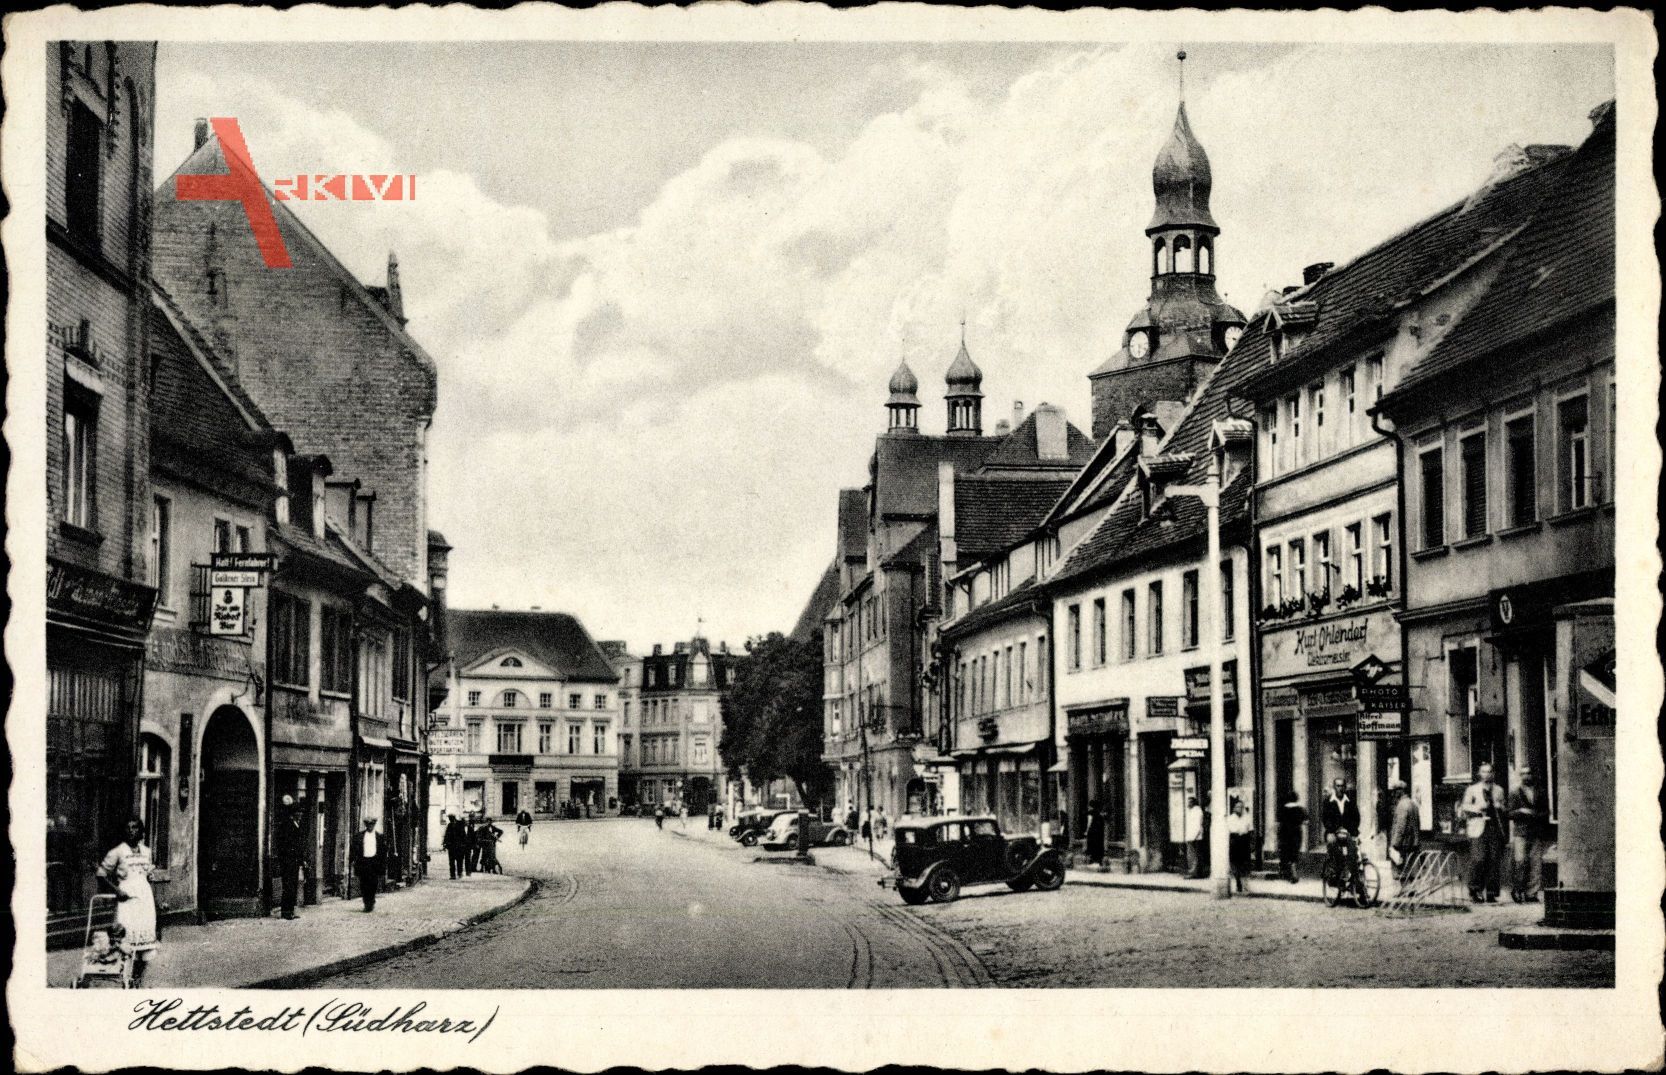 Hettstedt im Harzvorland Sachsen Anhalt, Straßenpartie, Geschäft K. Ohlendorf